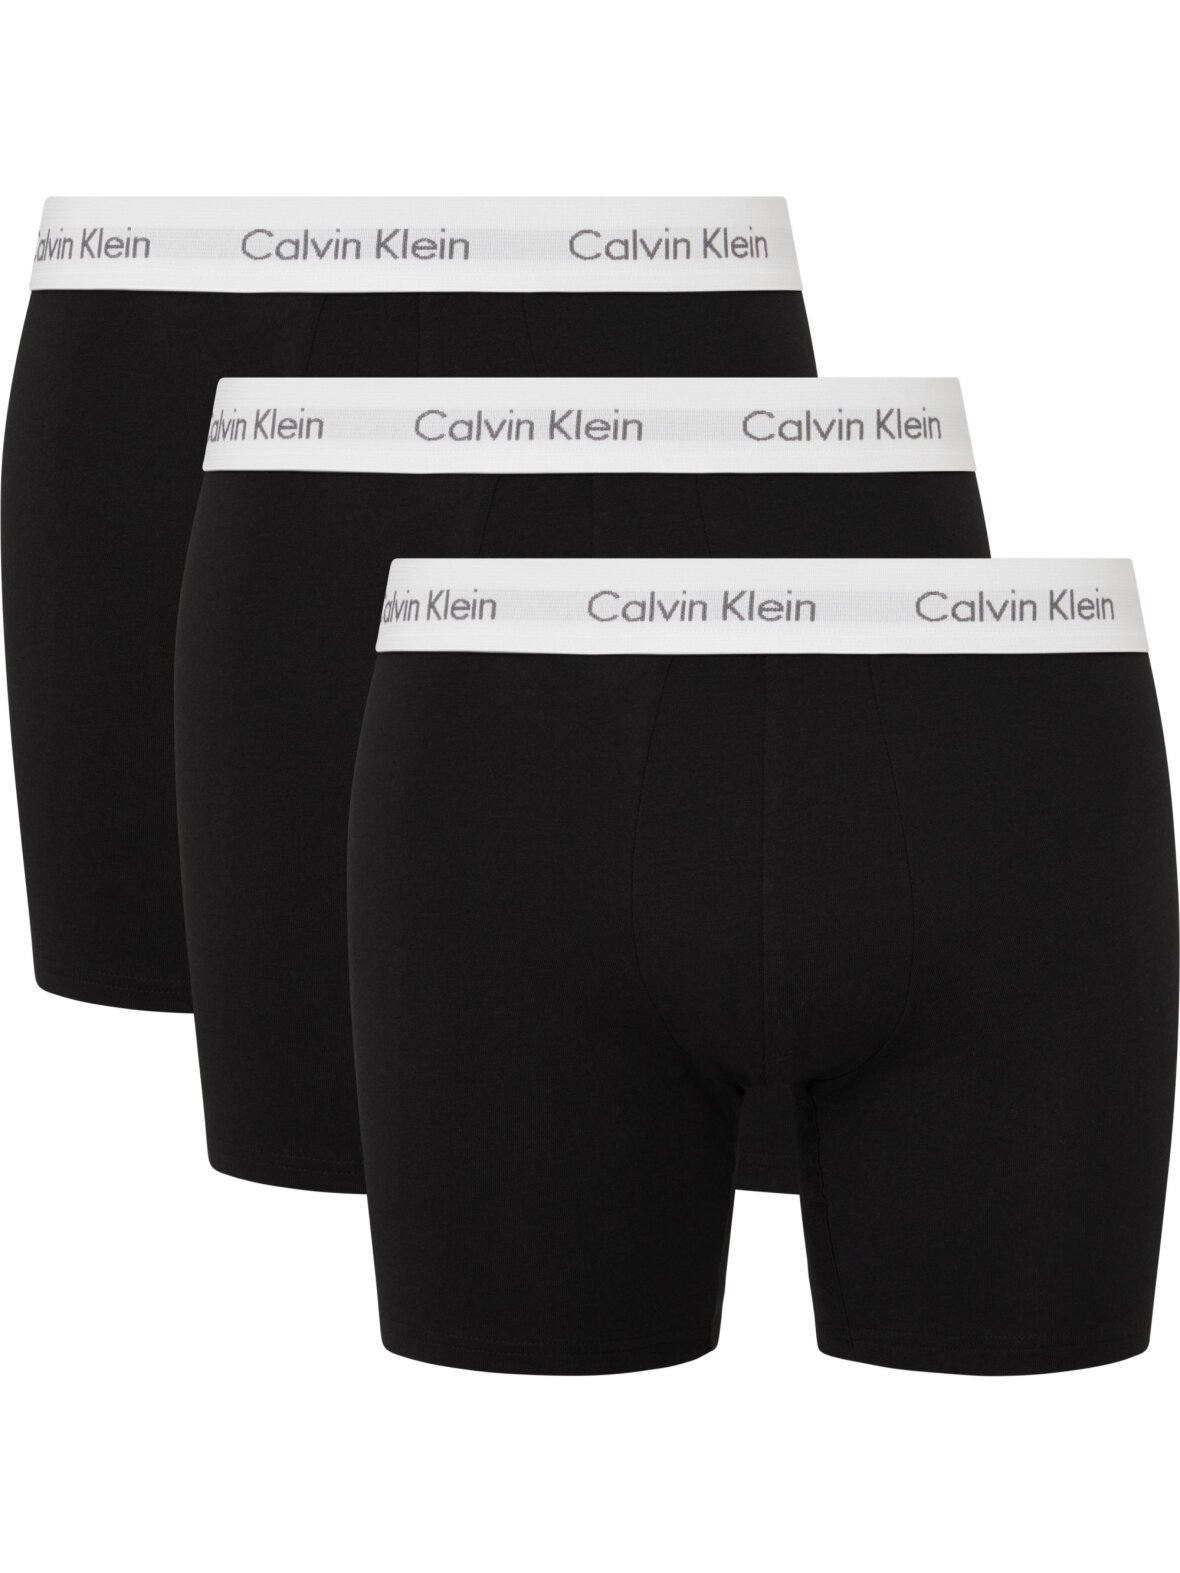 Christensen - Undertøj - Klein Underwear Calvin Klein 3p boxer brief